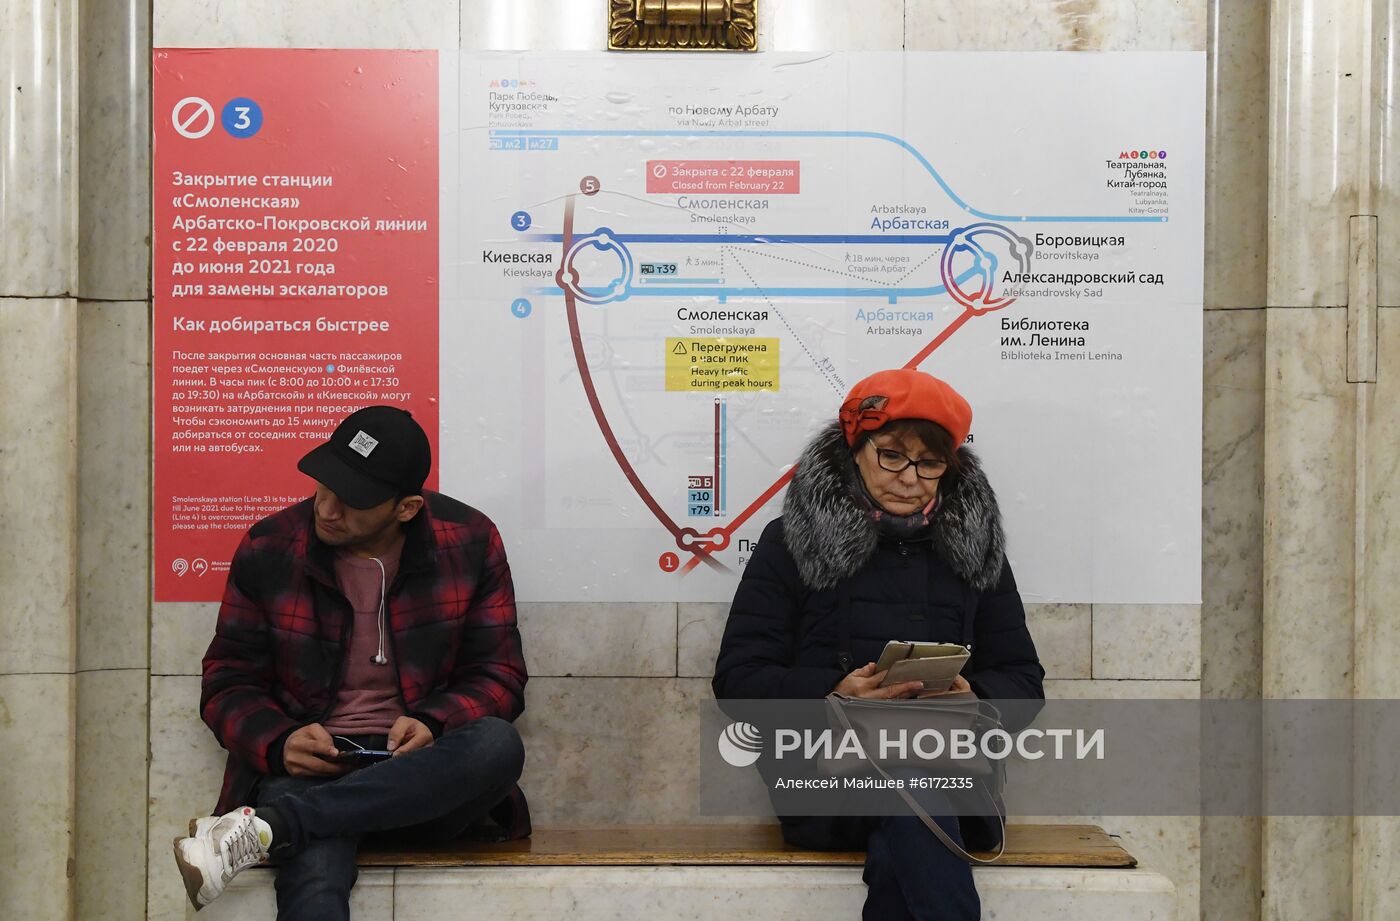 Станция метро "Смоленская" Арбатско-Покровской линии в преддверии ремонта